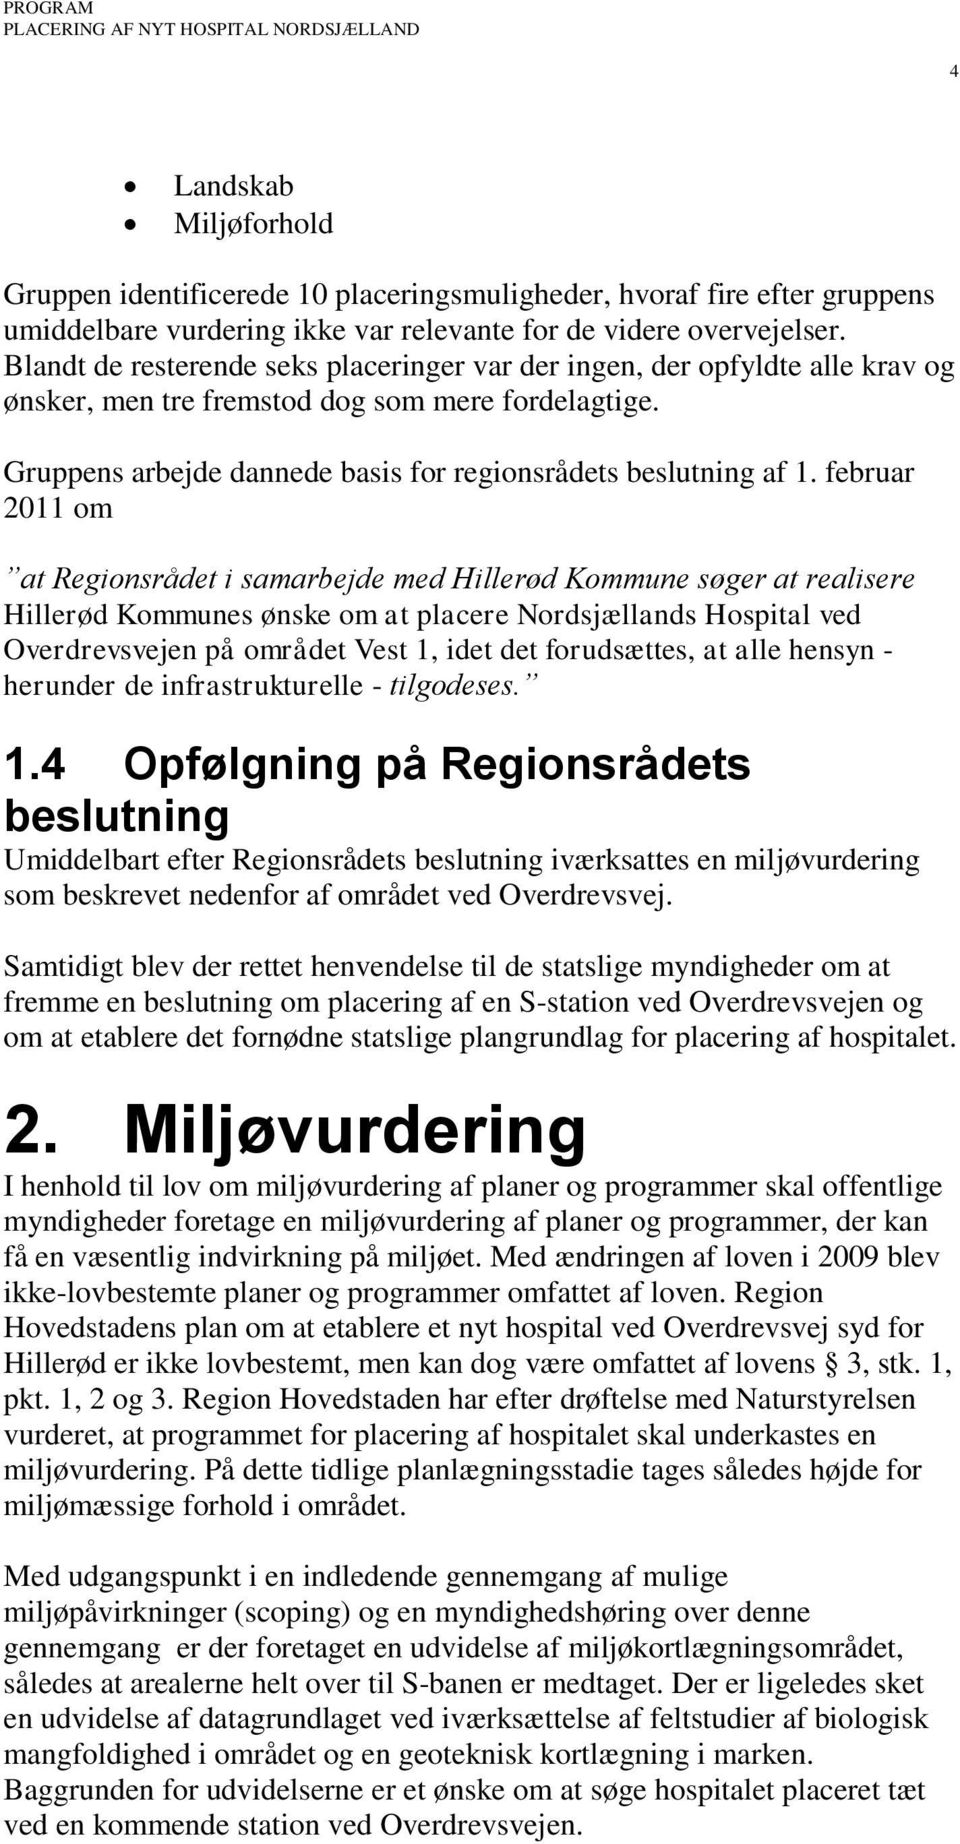 februar 2011 om at Regionsrådet i samarbejde med Hillerød Kommune søger at realisere Hillerød Kommunes ønske om at placere Nordsjællands Hospital ved Overdrevsvejen på området Vest 1, idet det